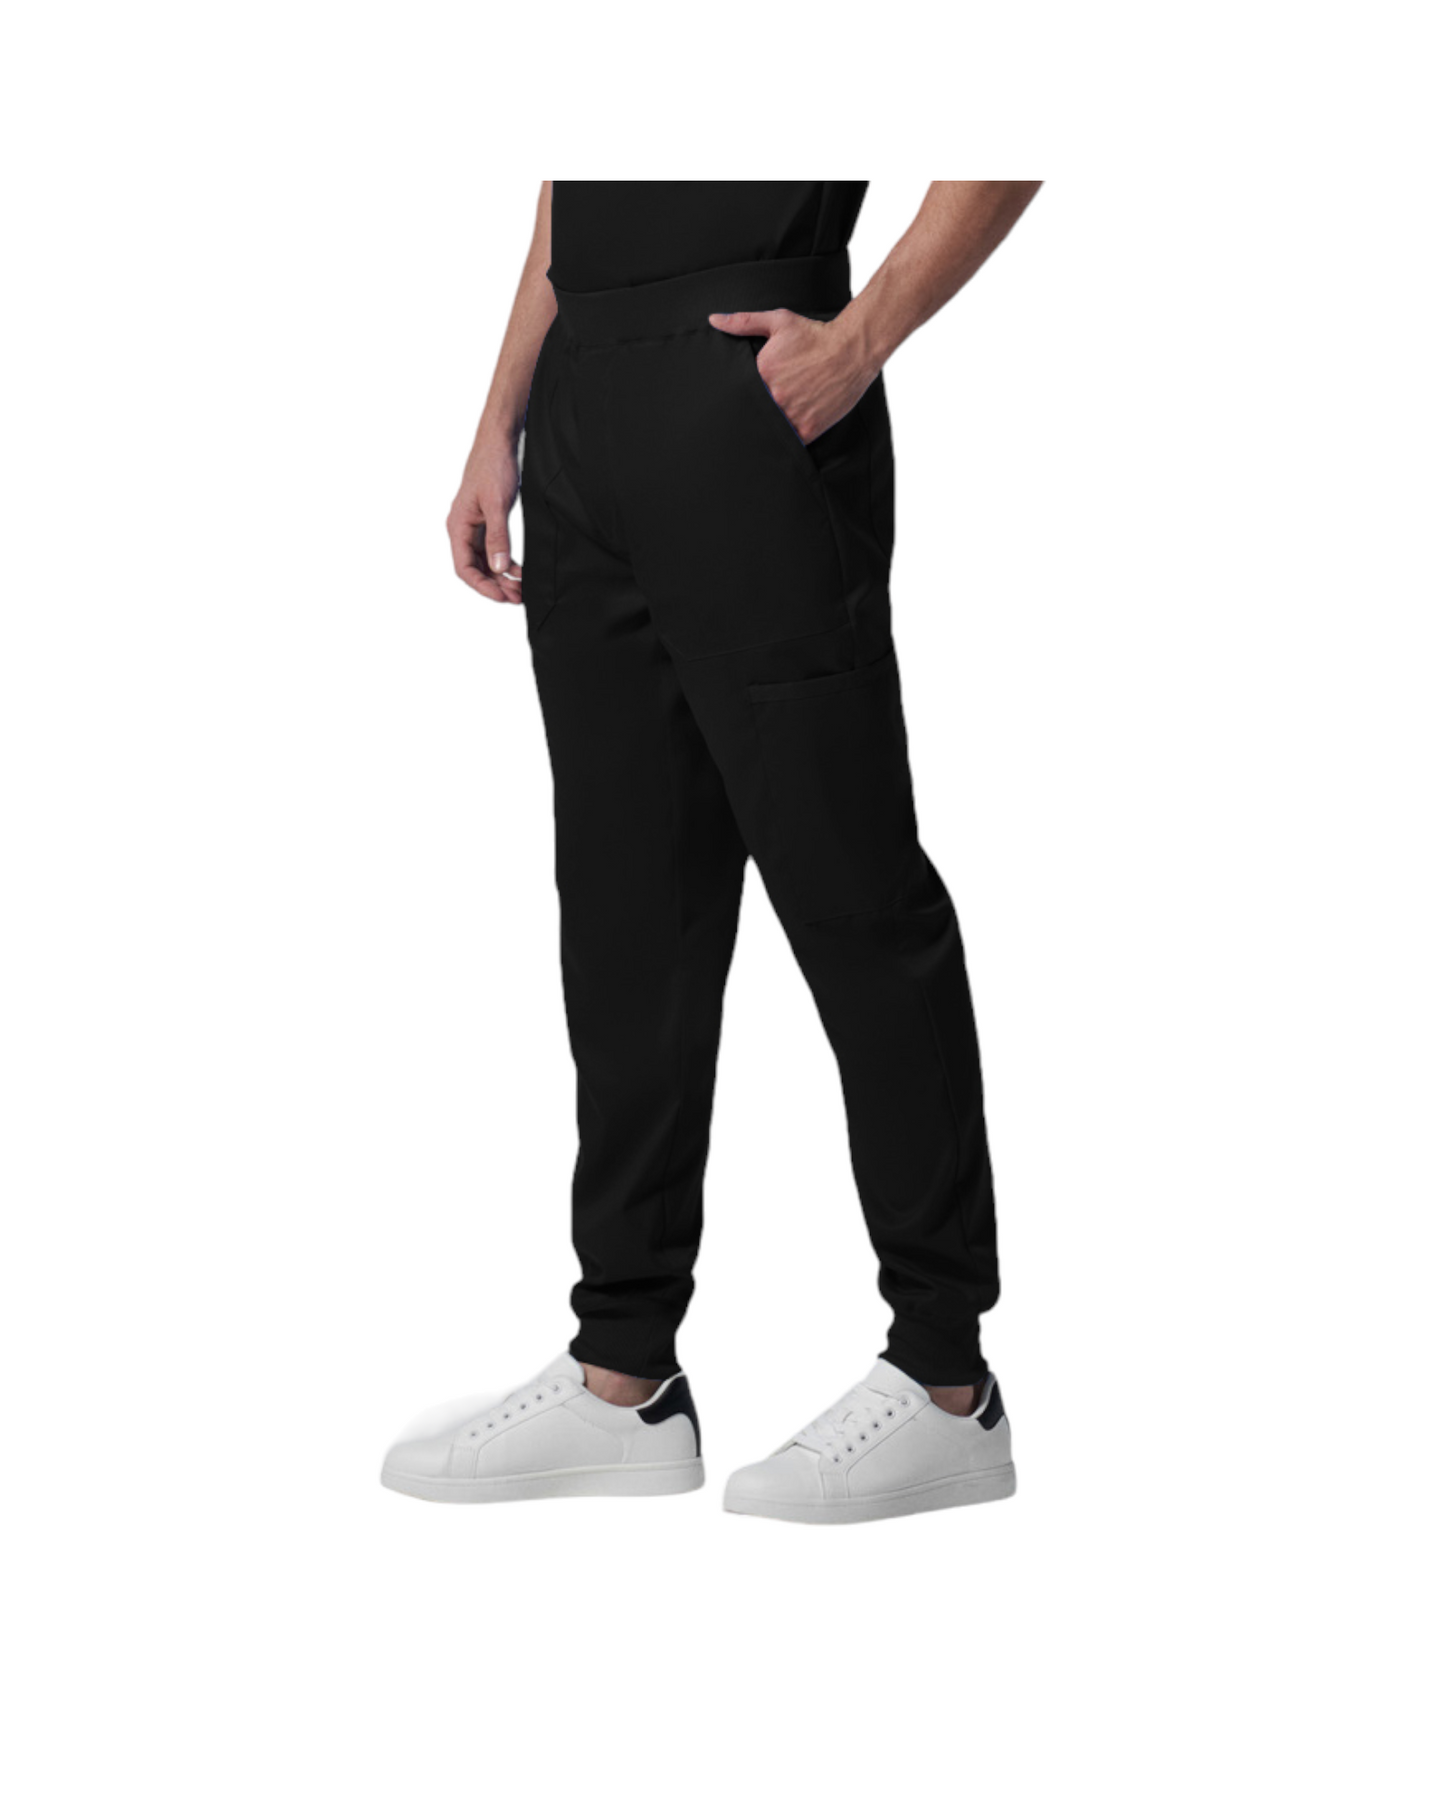 Pantalon jogger pour hommes Landau Proflex #LB407 OS couleur vue latérale